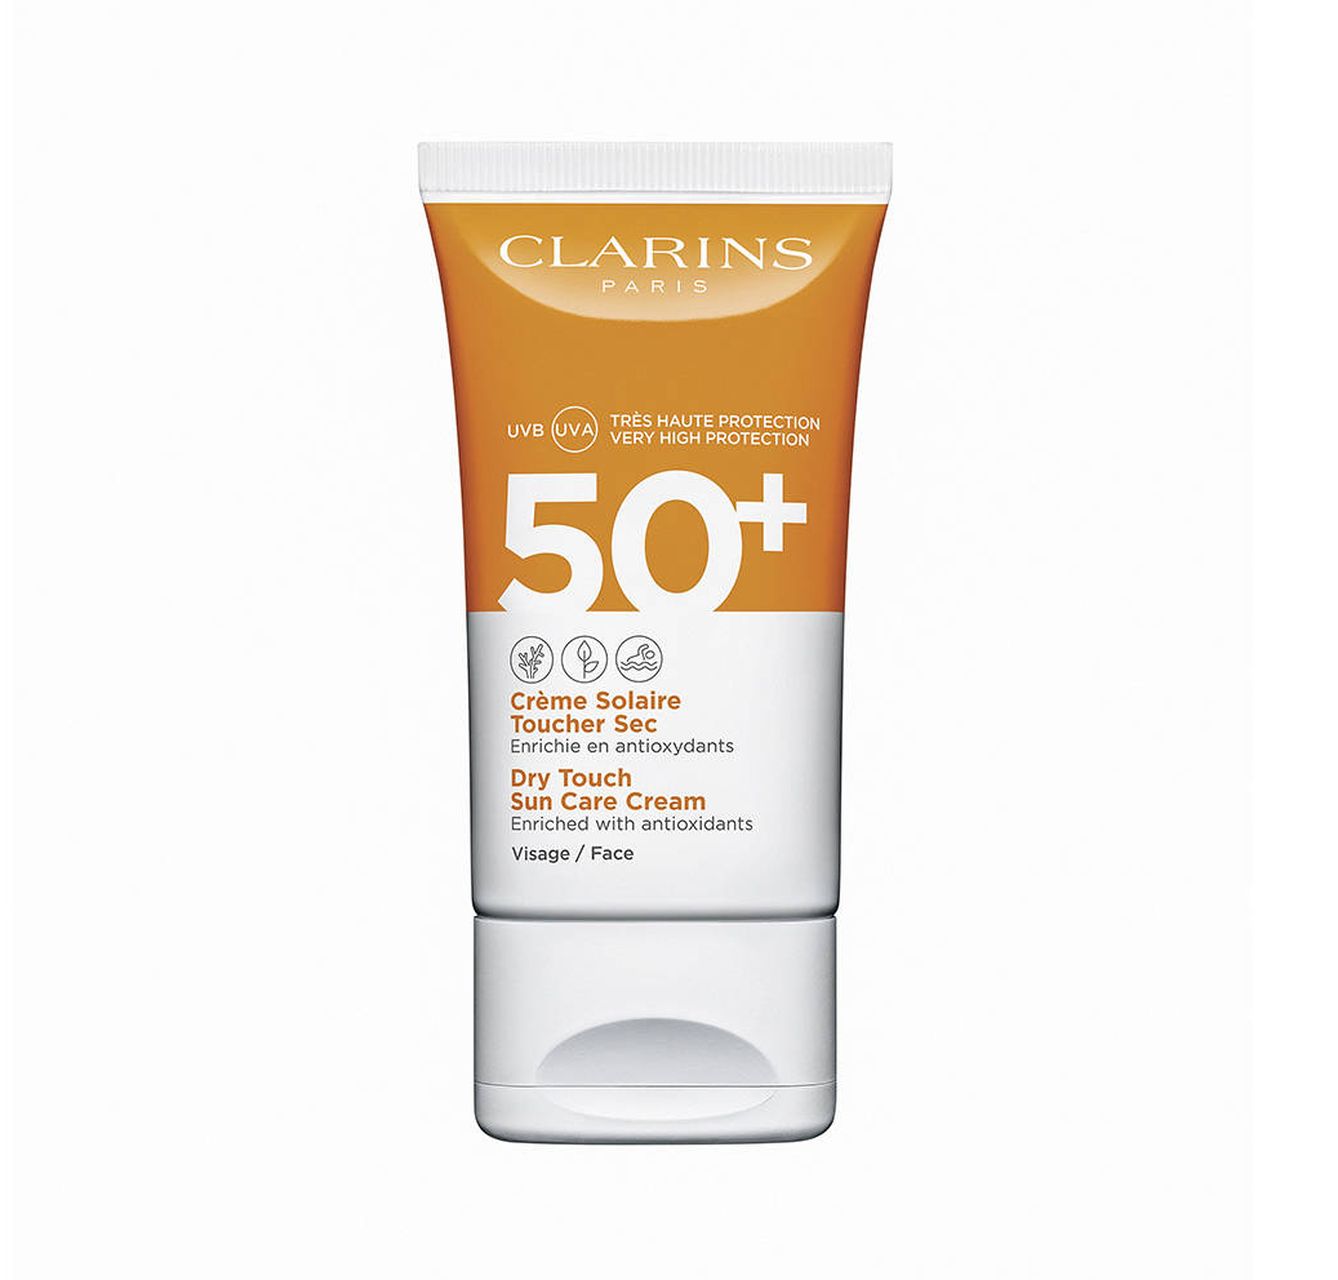 CRÈME SOLAIRE TOUCHER SEC SPF 50. Crema solar de alta protección para el rostro, con acabado seco y aspecto mate. Para todas las pieles (75 ml / 35,50 €).